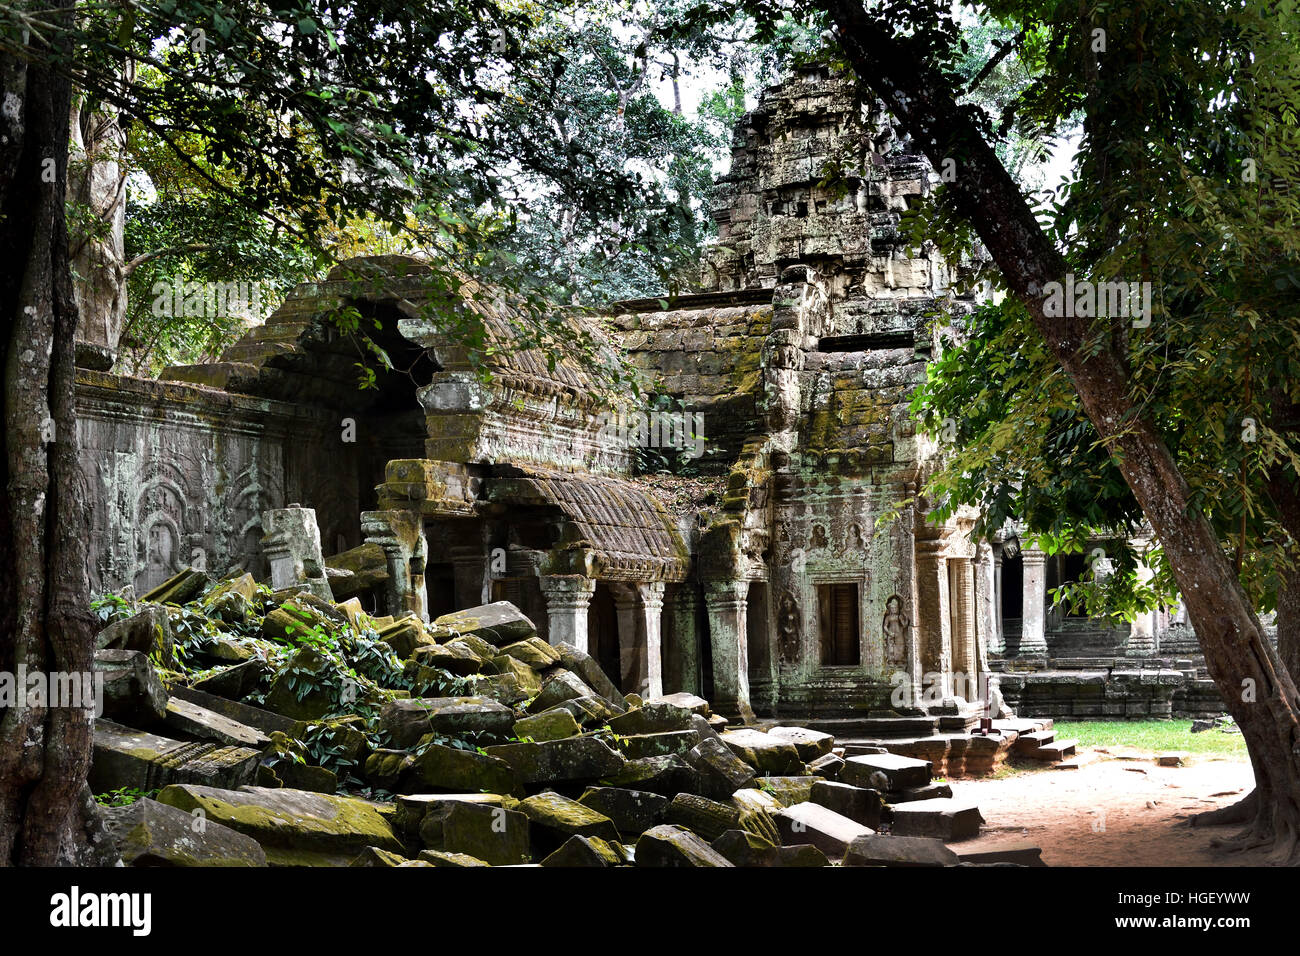 Ta Prohm Camboya, construido en el estilo Bayon principalmente a finales de los años 12 y principios de los siglos XIII y llamado originalmente Rajavihara.( Angkor complejo arqueológico de diferentes capitales del Imperio Khmer del siglo 9-15) Foto de stock